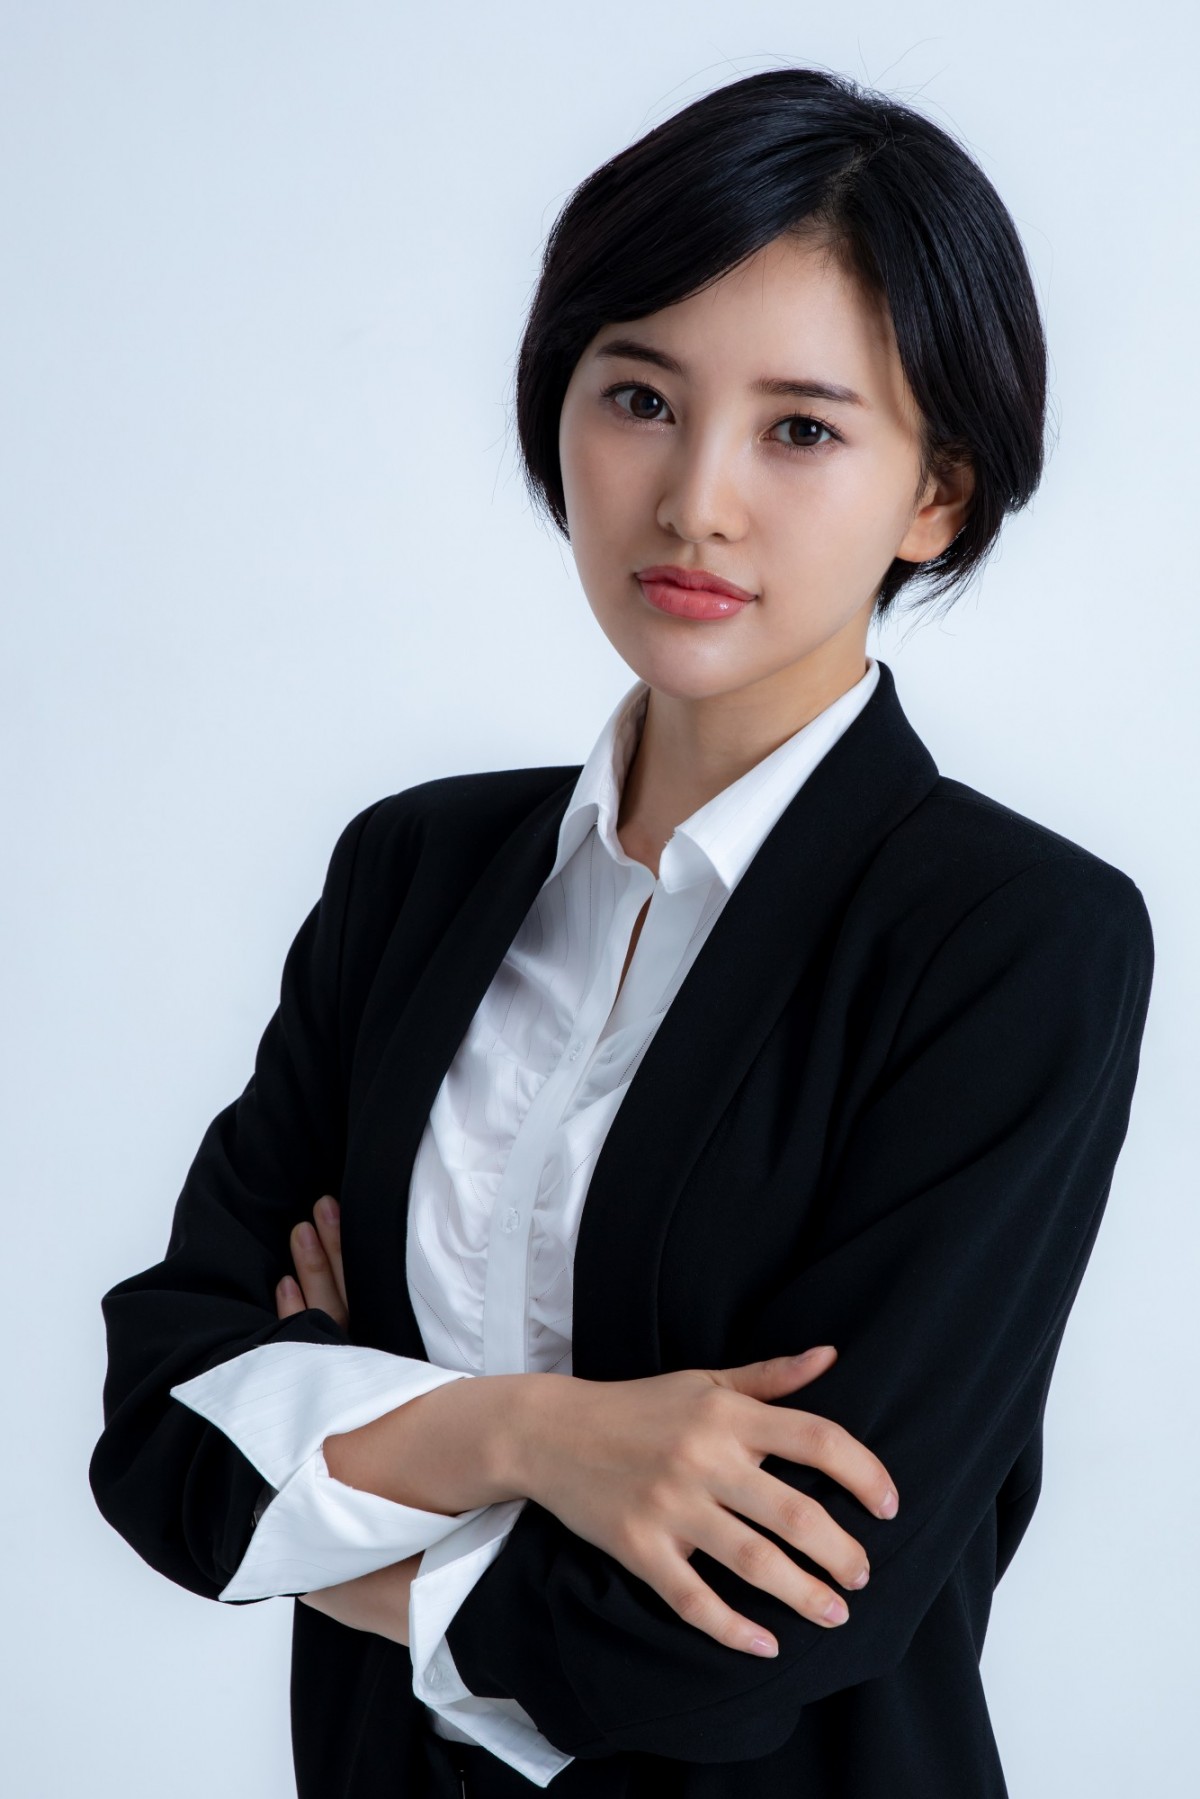 HKT48・兒玉遥、卒業発表 エイベックス所属で9月舞台も決定「これからも見守って」 | ORICON NEWS